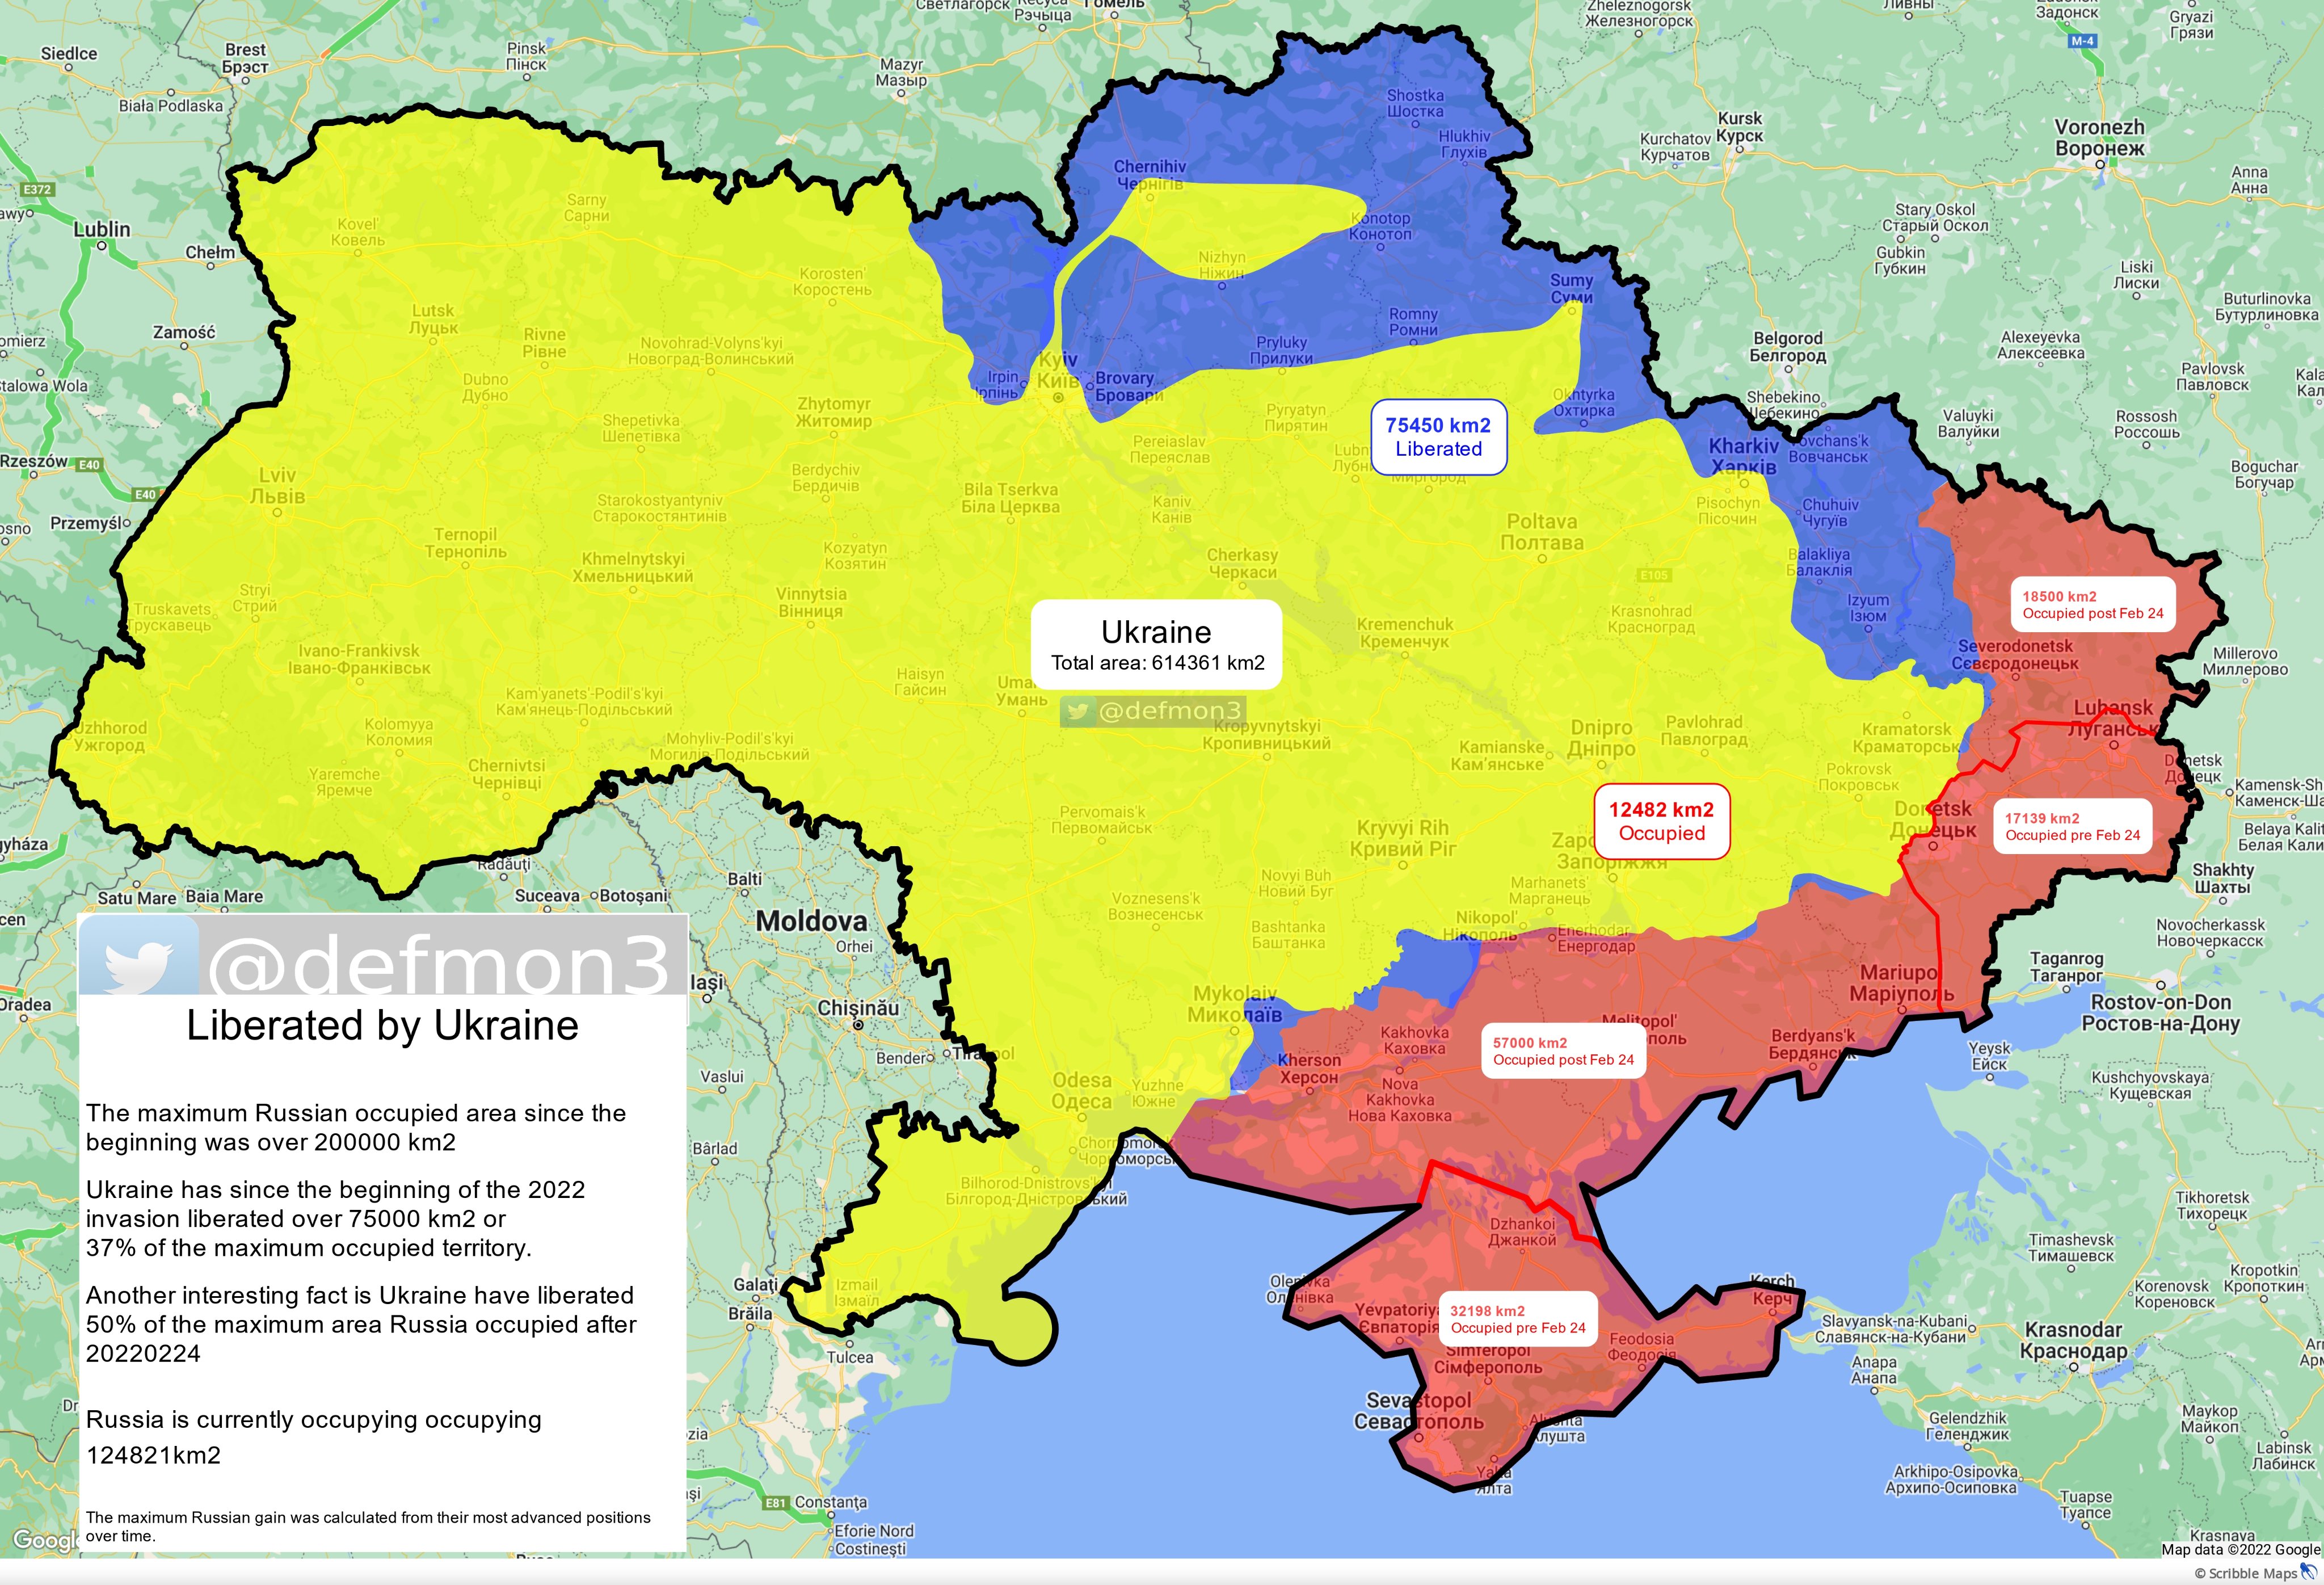 Сколько территорий Украины освободили уже освободили ВСУ - карта